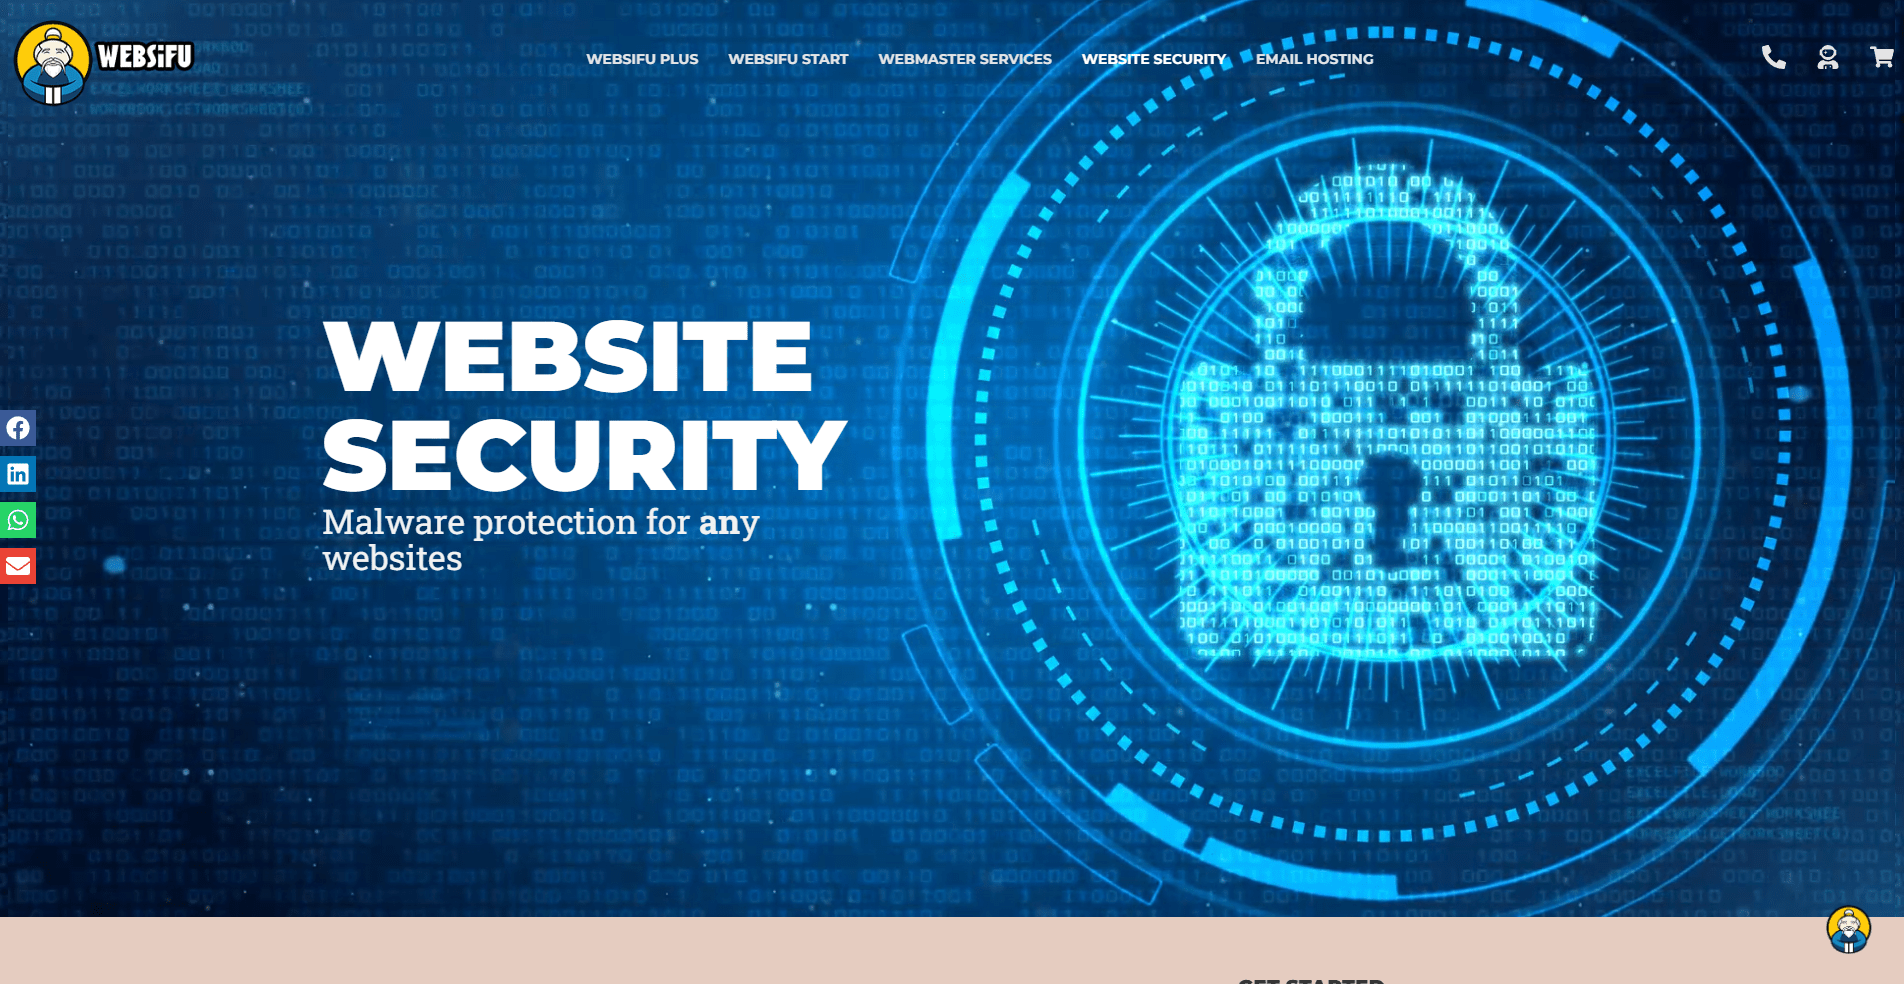 websifu-new-security